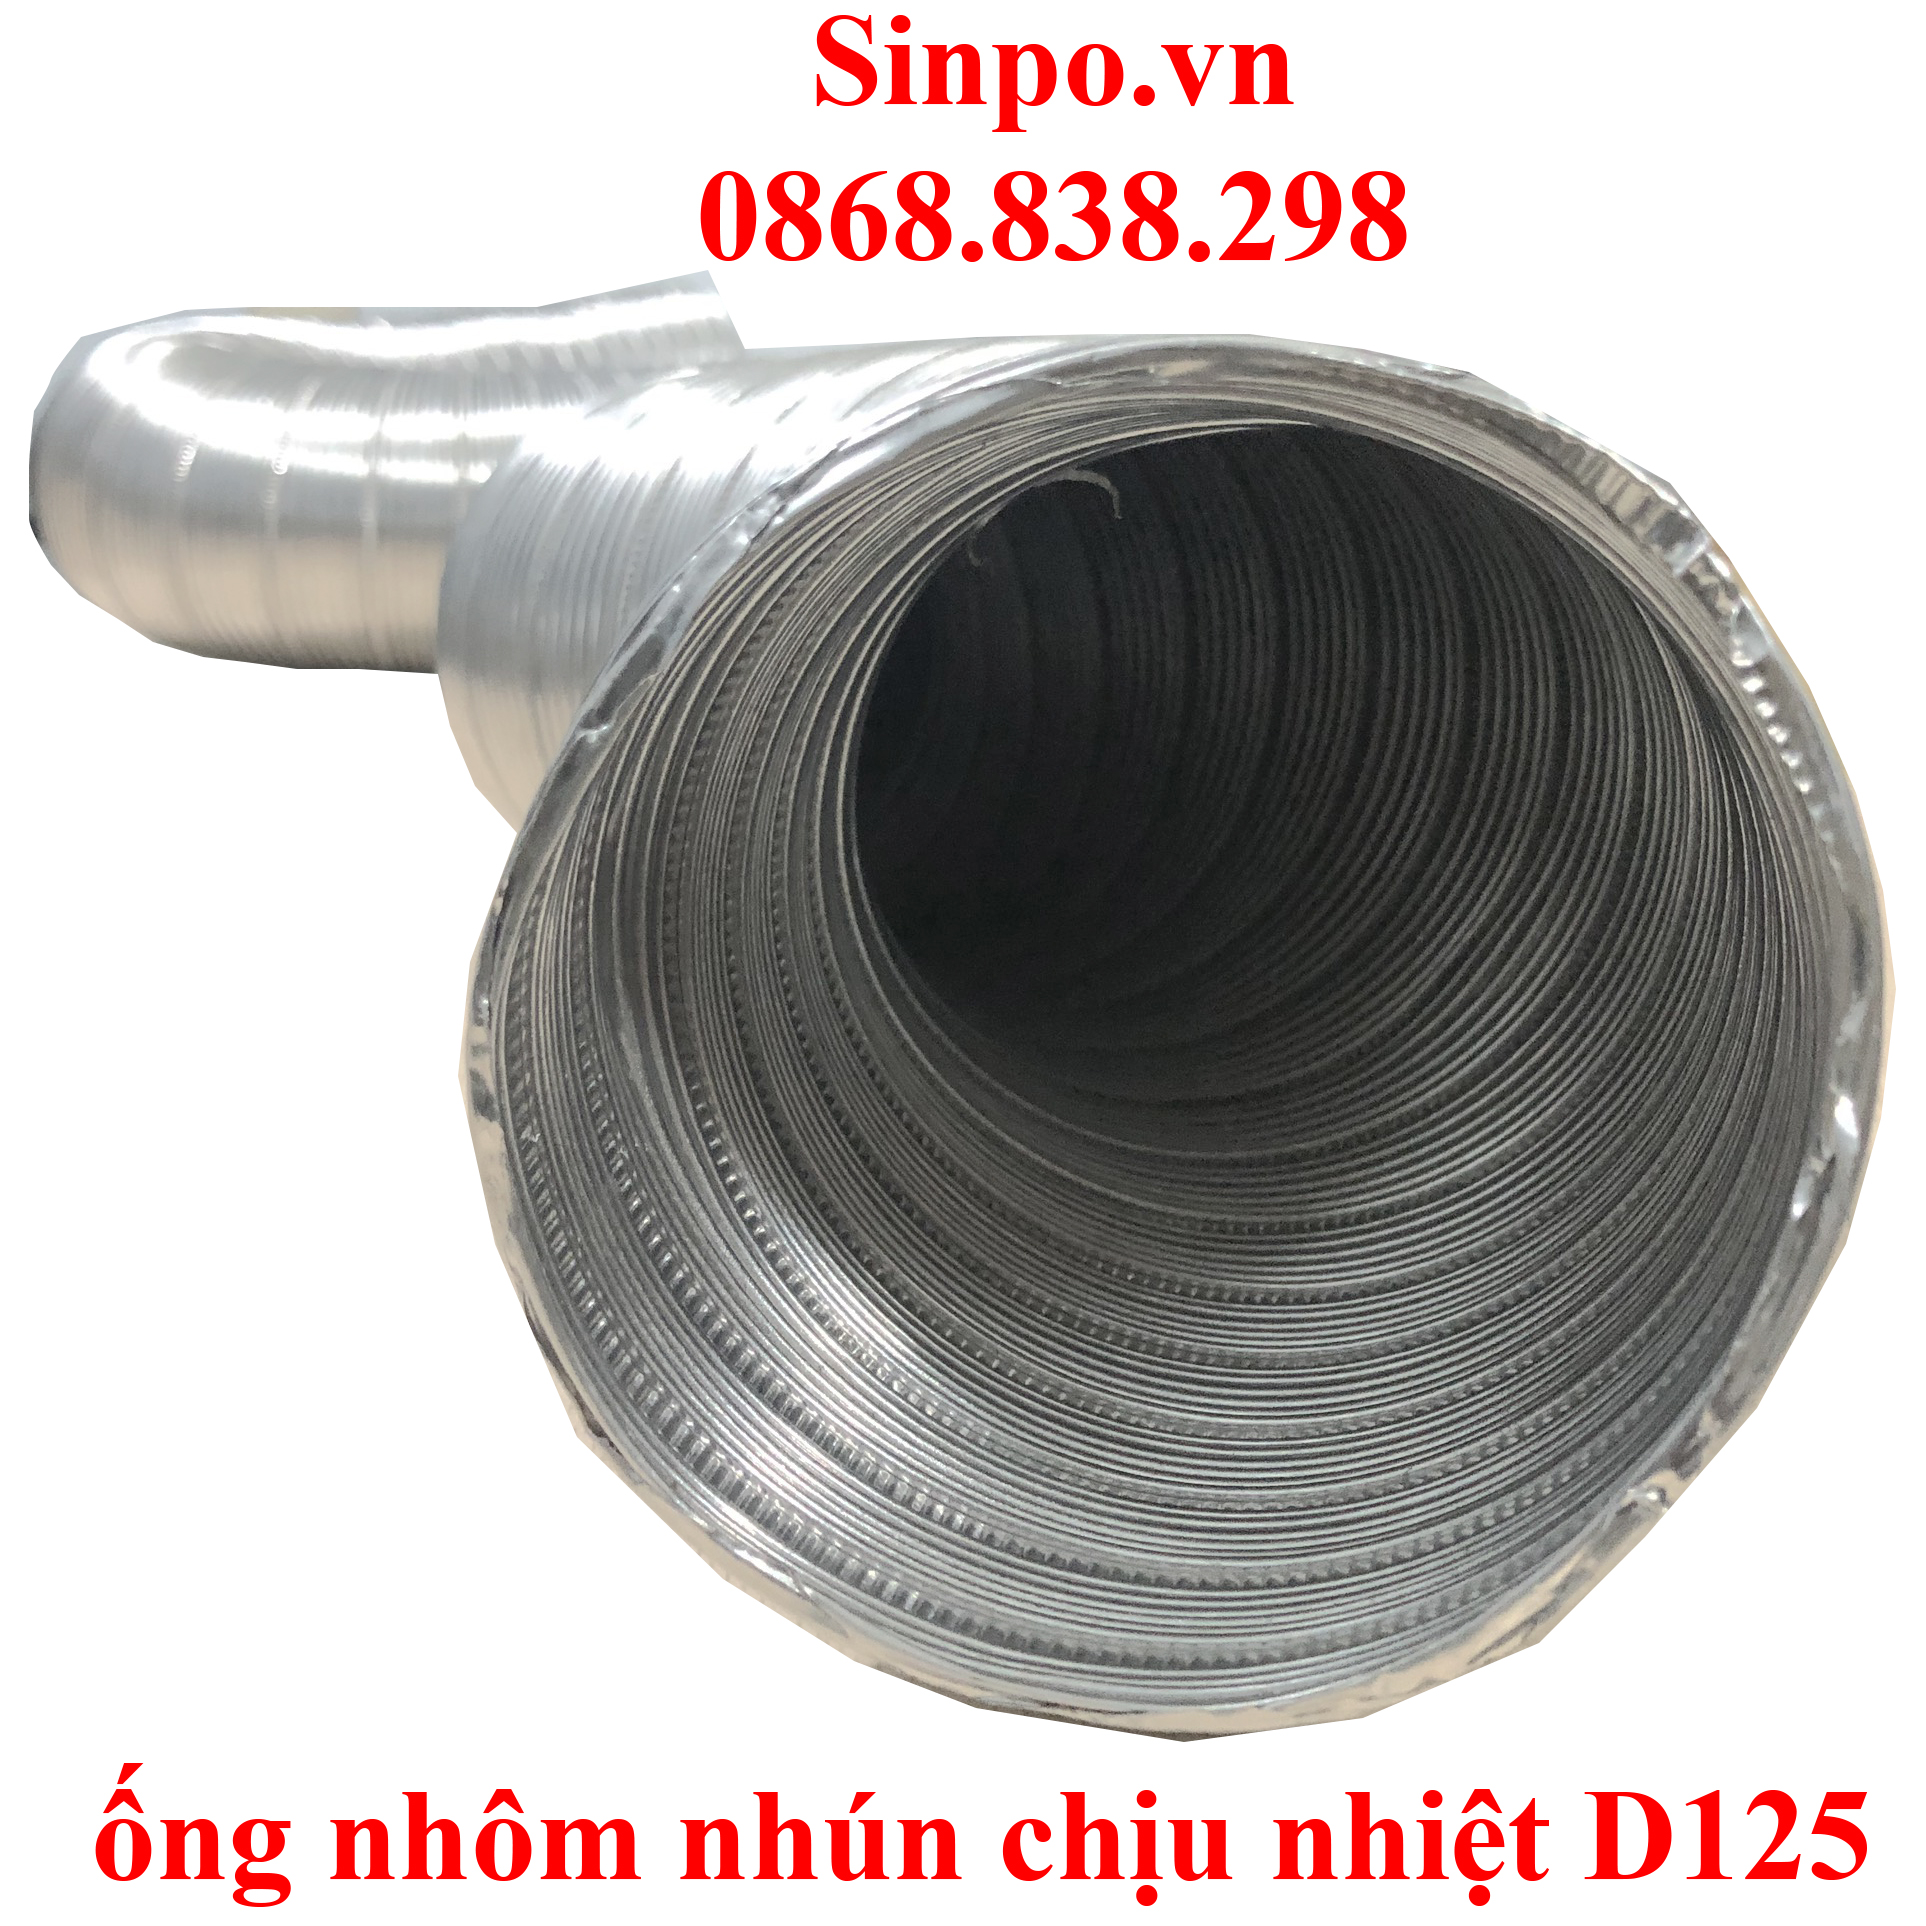 Cung cấp ống nhôm nhún chịu nhiệt D125 mm tại Hà Nội